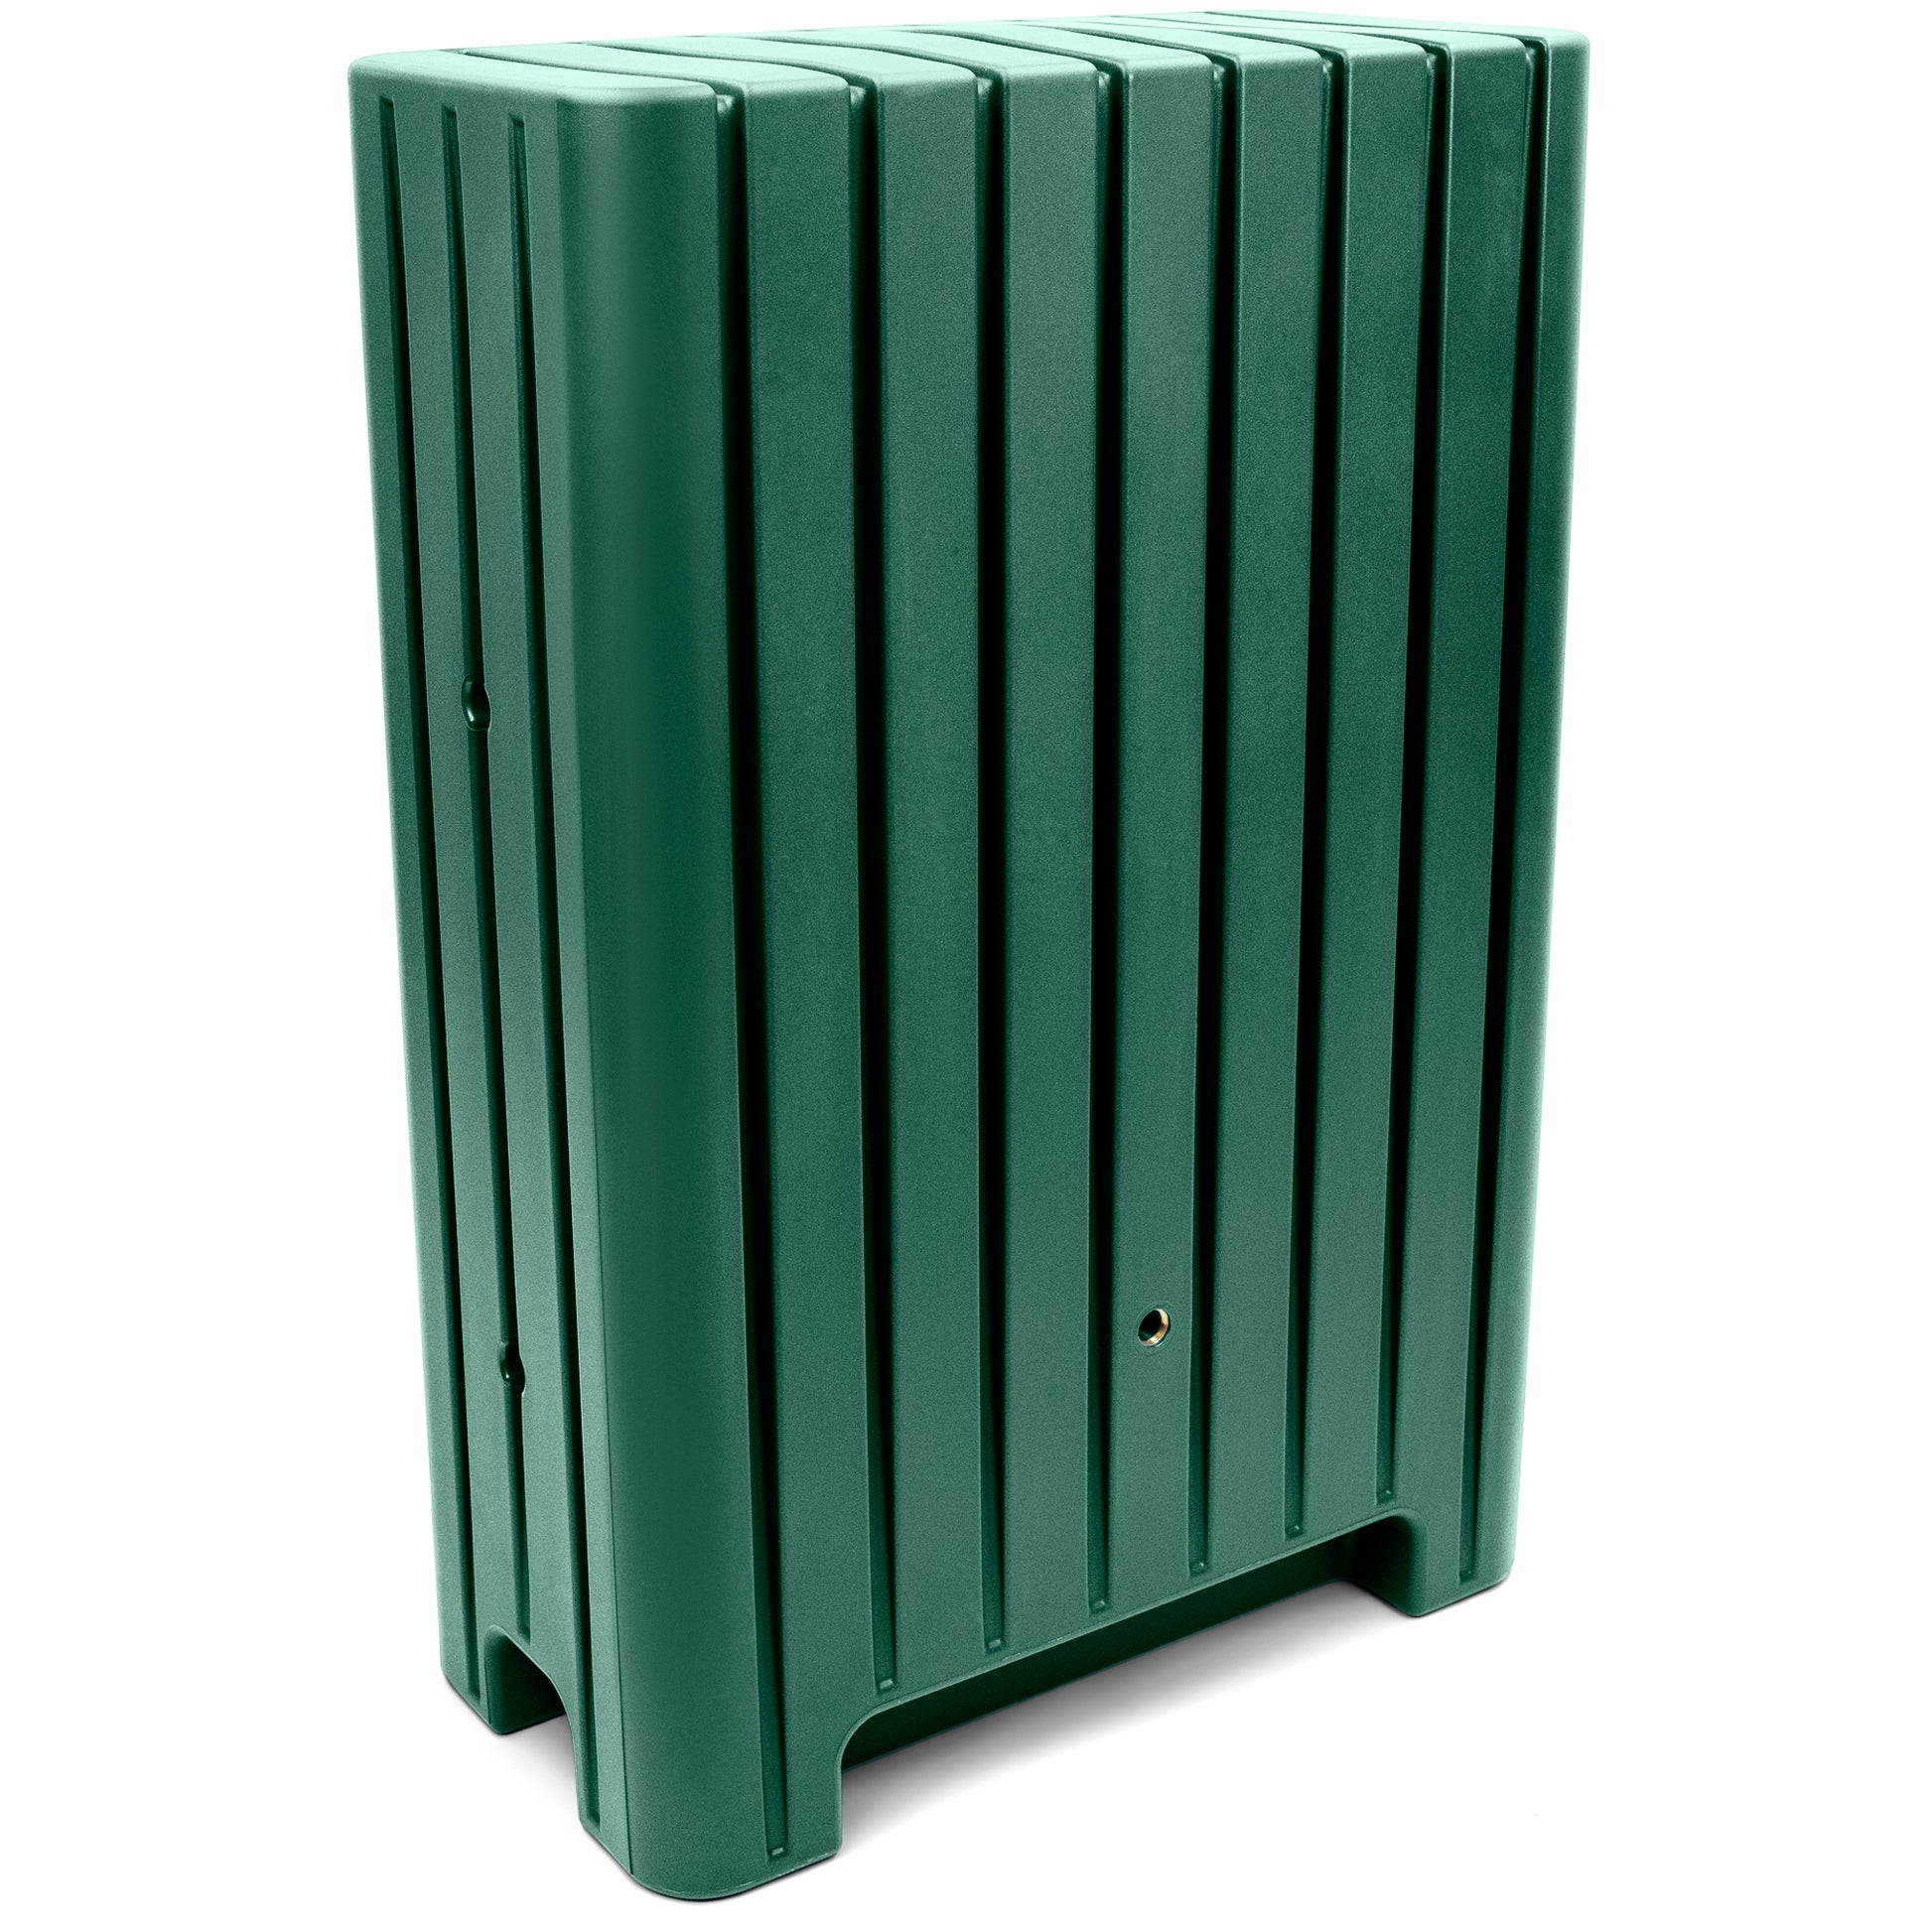 Vertikaler grüner Kunststoff YourCasa Regentonne 280 Liter [UrbanElegance] Outdoor Mülleimer mit Rippendesign und Rotationsverfahren von yourcasa-de.